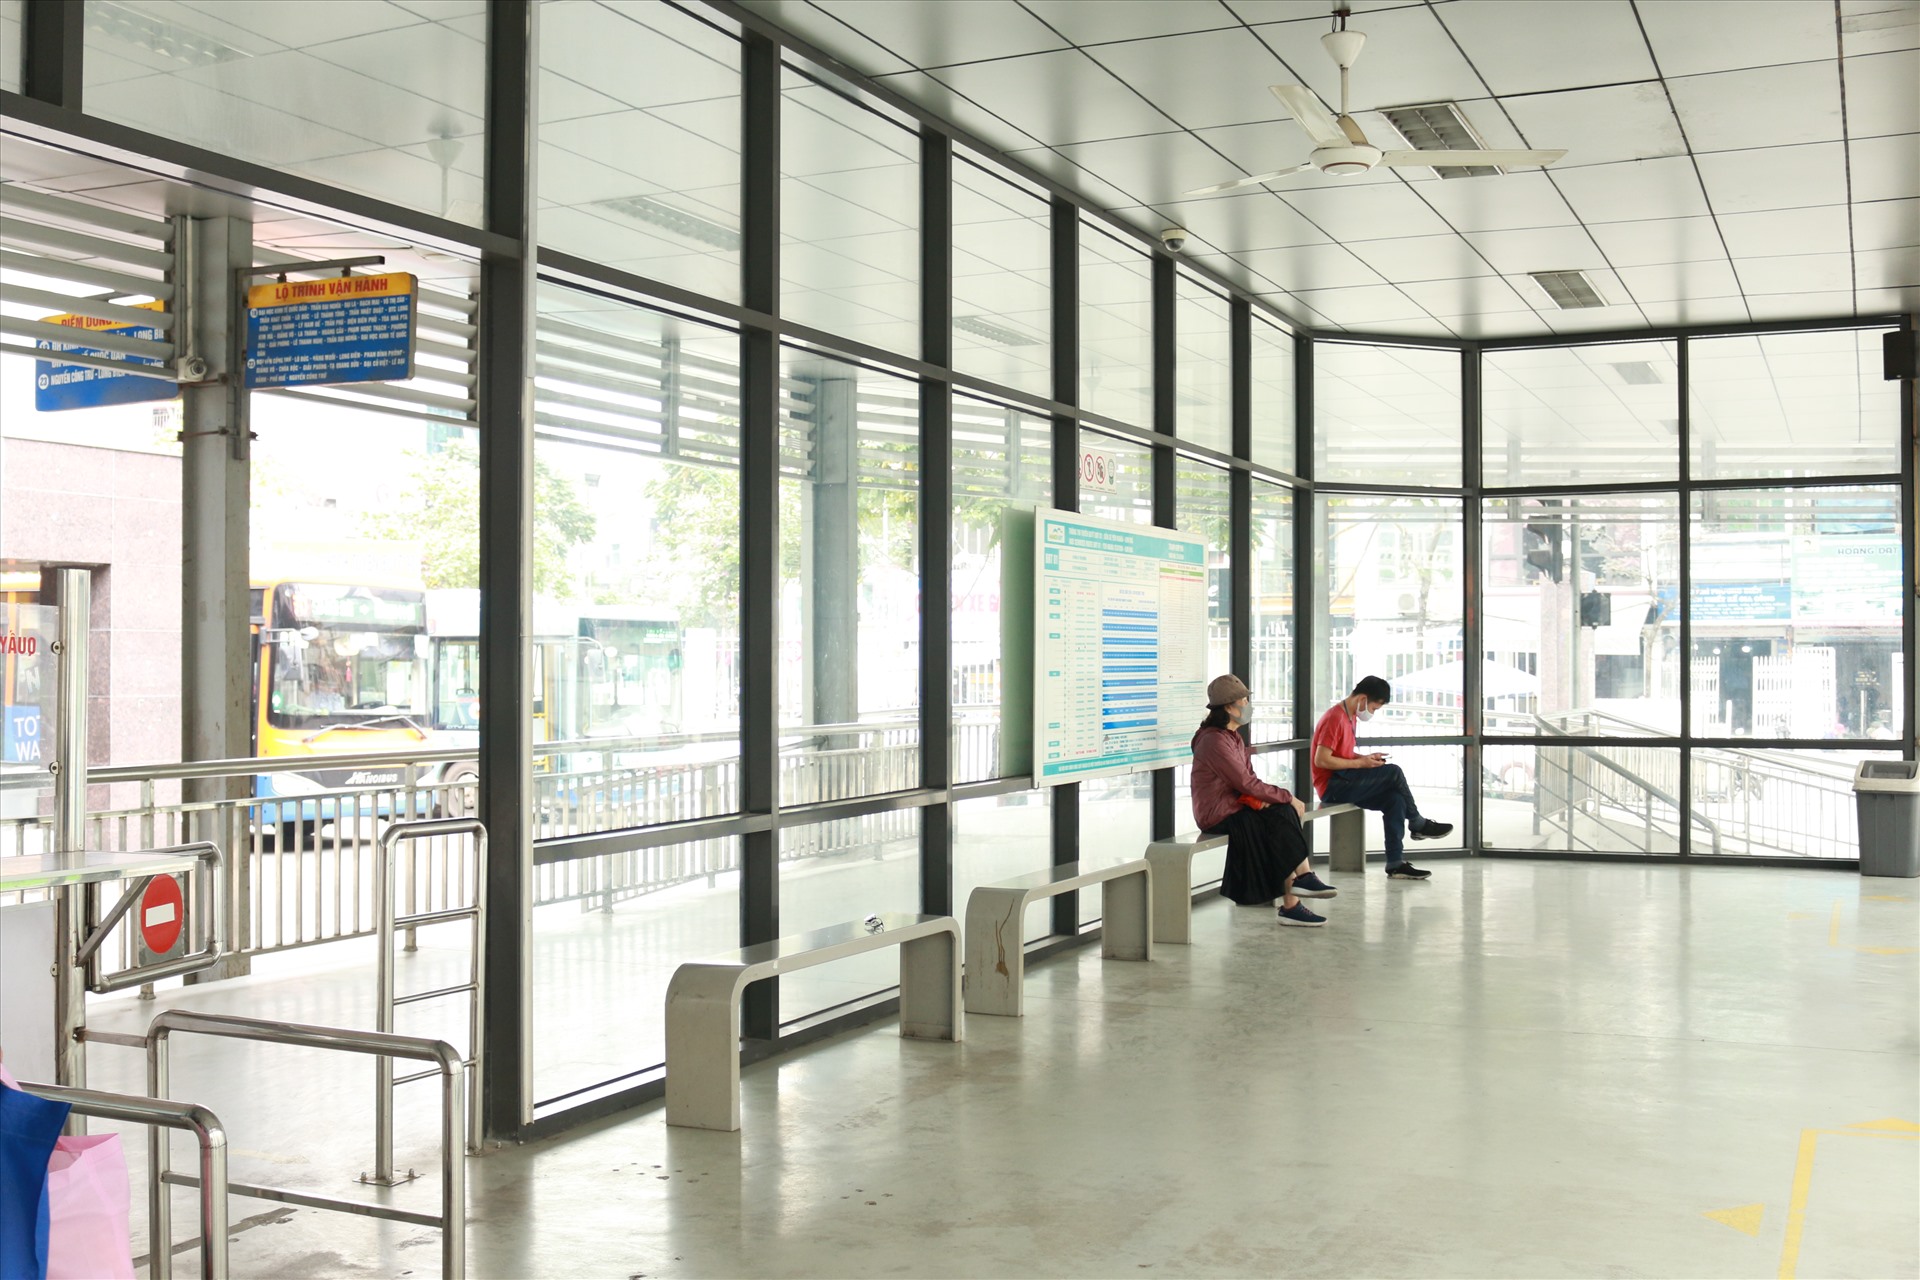 Trong một diễn biến liên quan, tình hình sử dụng phương tiện công cộng mùa dịch COVID-19 cũng không quá đông đúc. Tại nhờ chờ xe buýt nhanh BRT Kim Mã vắng người.